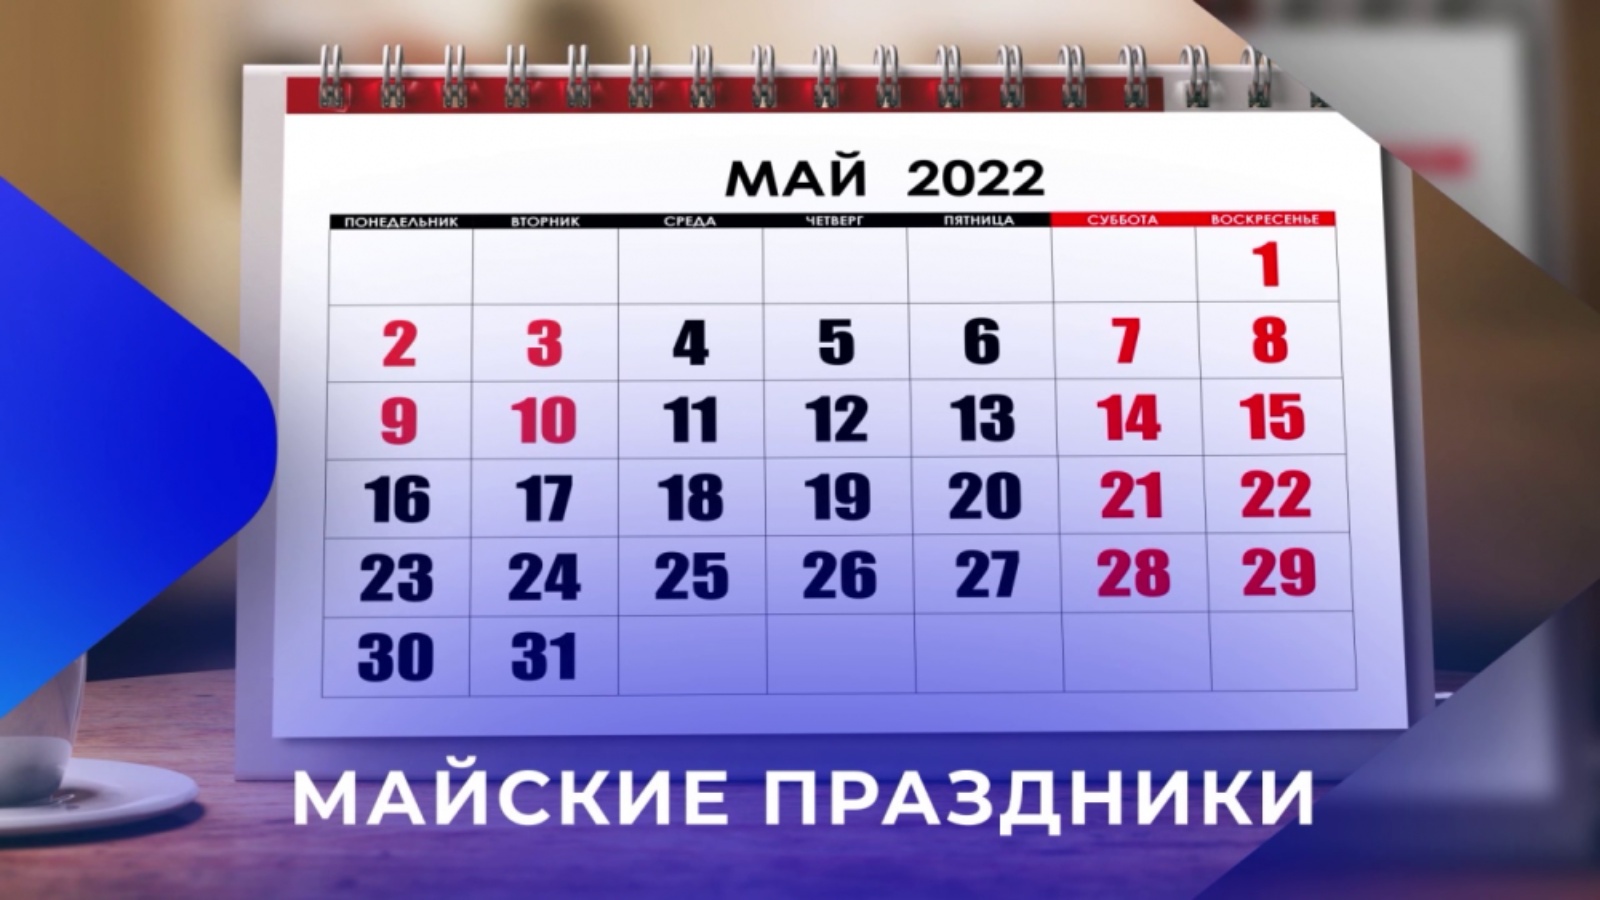 Отдых на 9 мая. Праздники в мае. Рабочий график на майские праздники. Календарь майских праздников 2022. Выходные в мае 2022.